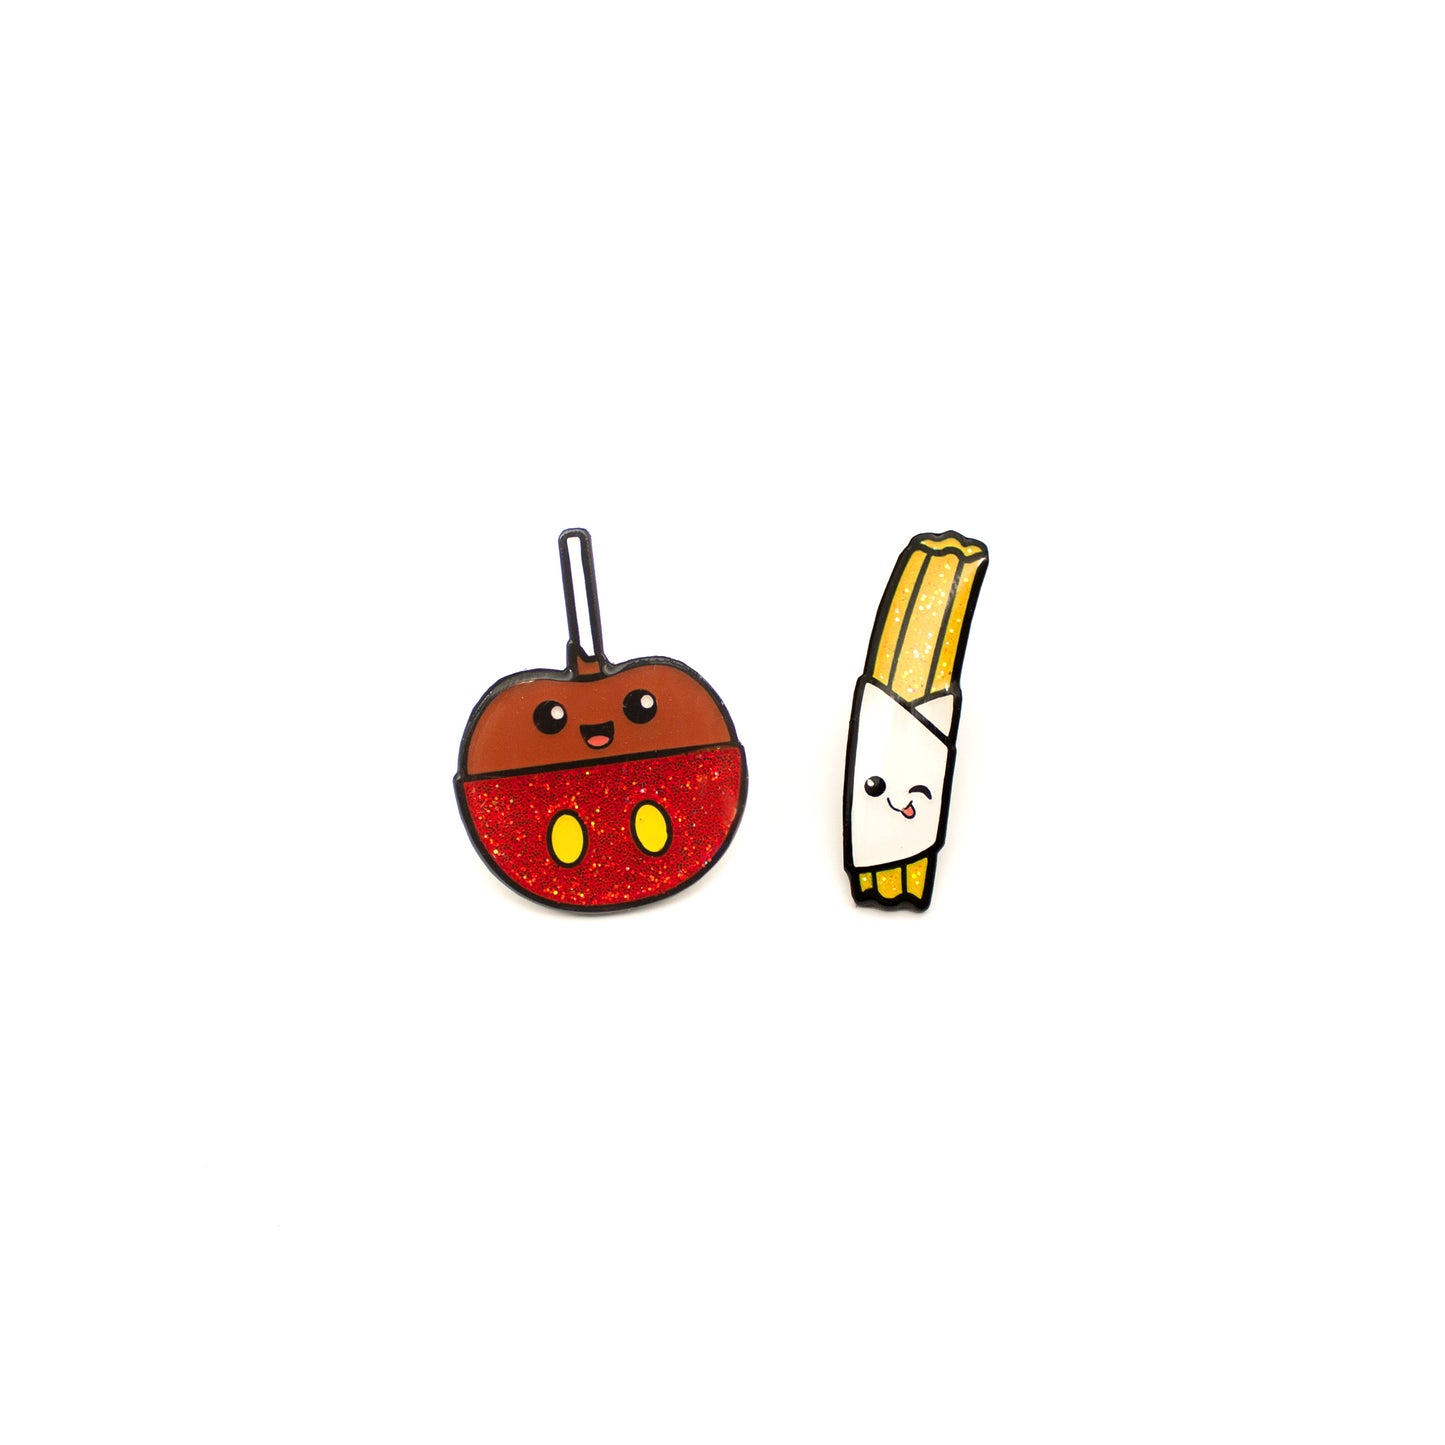 Caramel Apple and Churro enamel pin set on white background